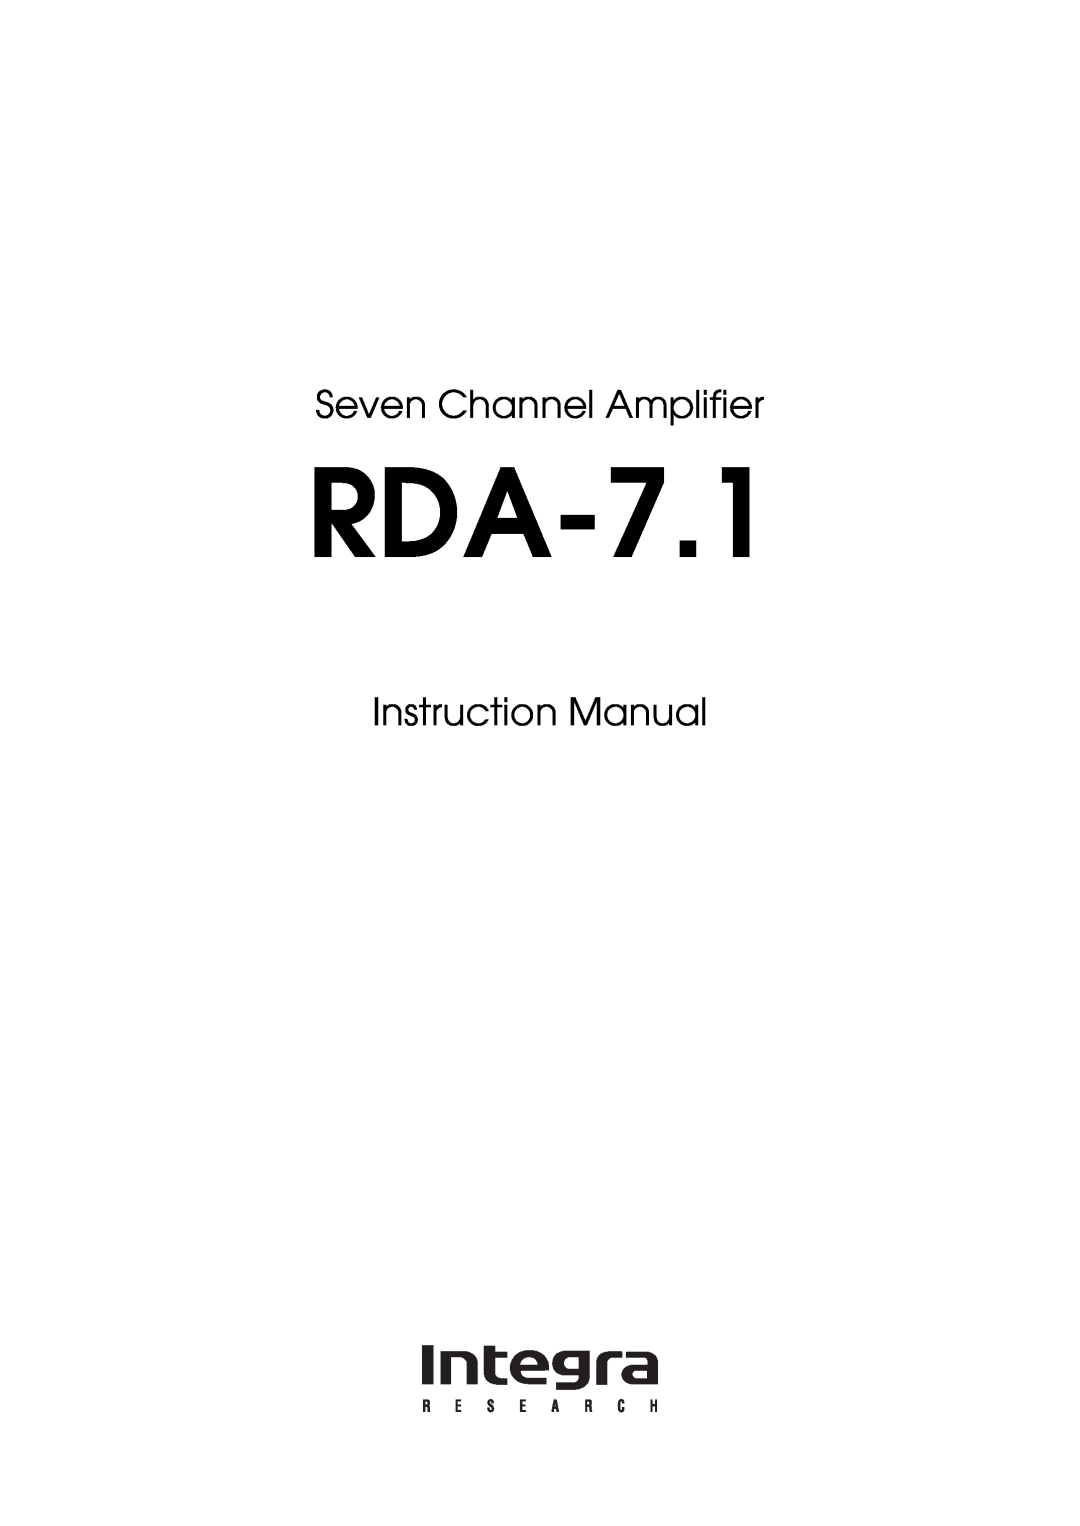 Onkyo RDA-7.1 instruction manual Seven Channel Amplifier 